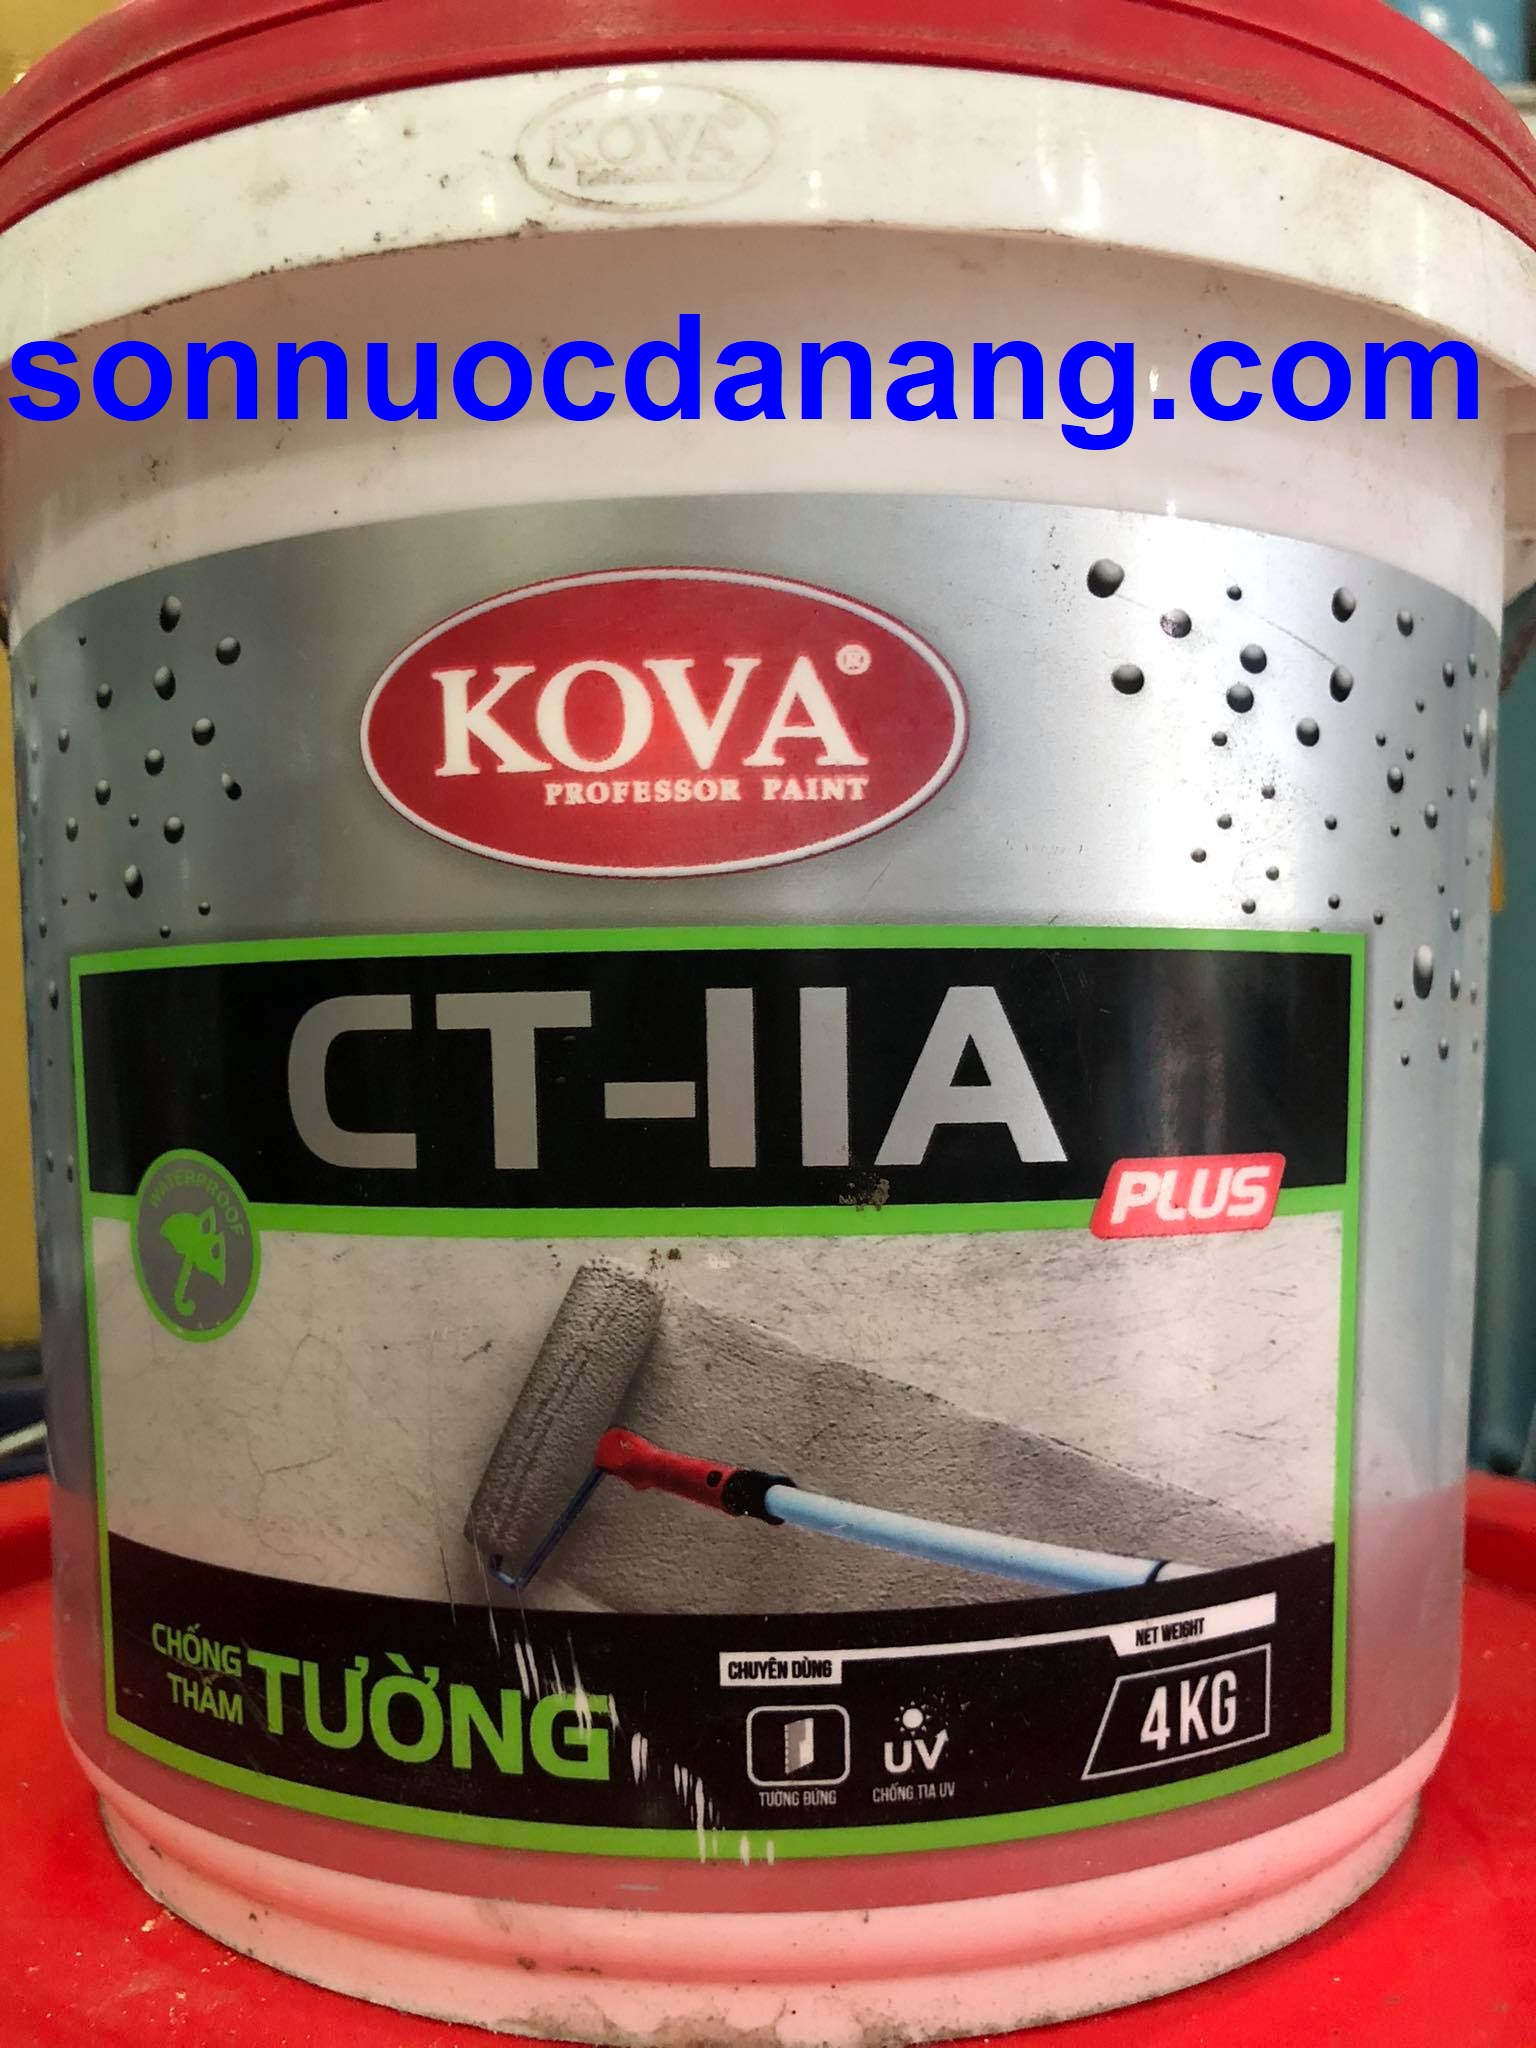 Với sơn KOVA CT11A Plus, ngôi nhà của bạn sẽ trông lấp lánh như mới sau mỗi lần sơn. Phong cách thiết kế hiện đại cùng với chất lượng đỉnh cao sẽ mang đến cho bạn sự hài lòng tuyệt đối. Hãy thưởng thức hình ảnh về sơn KOVA CT11A Plus để cảm nhận rõ hơn các ưu điểm của sản phẩm này.